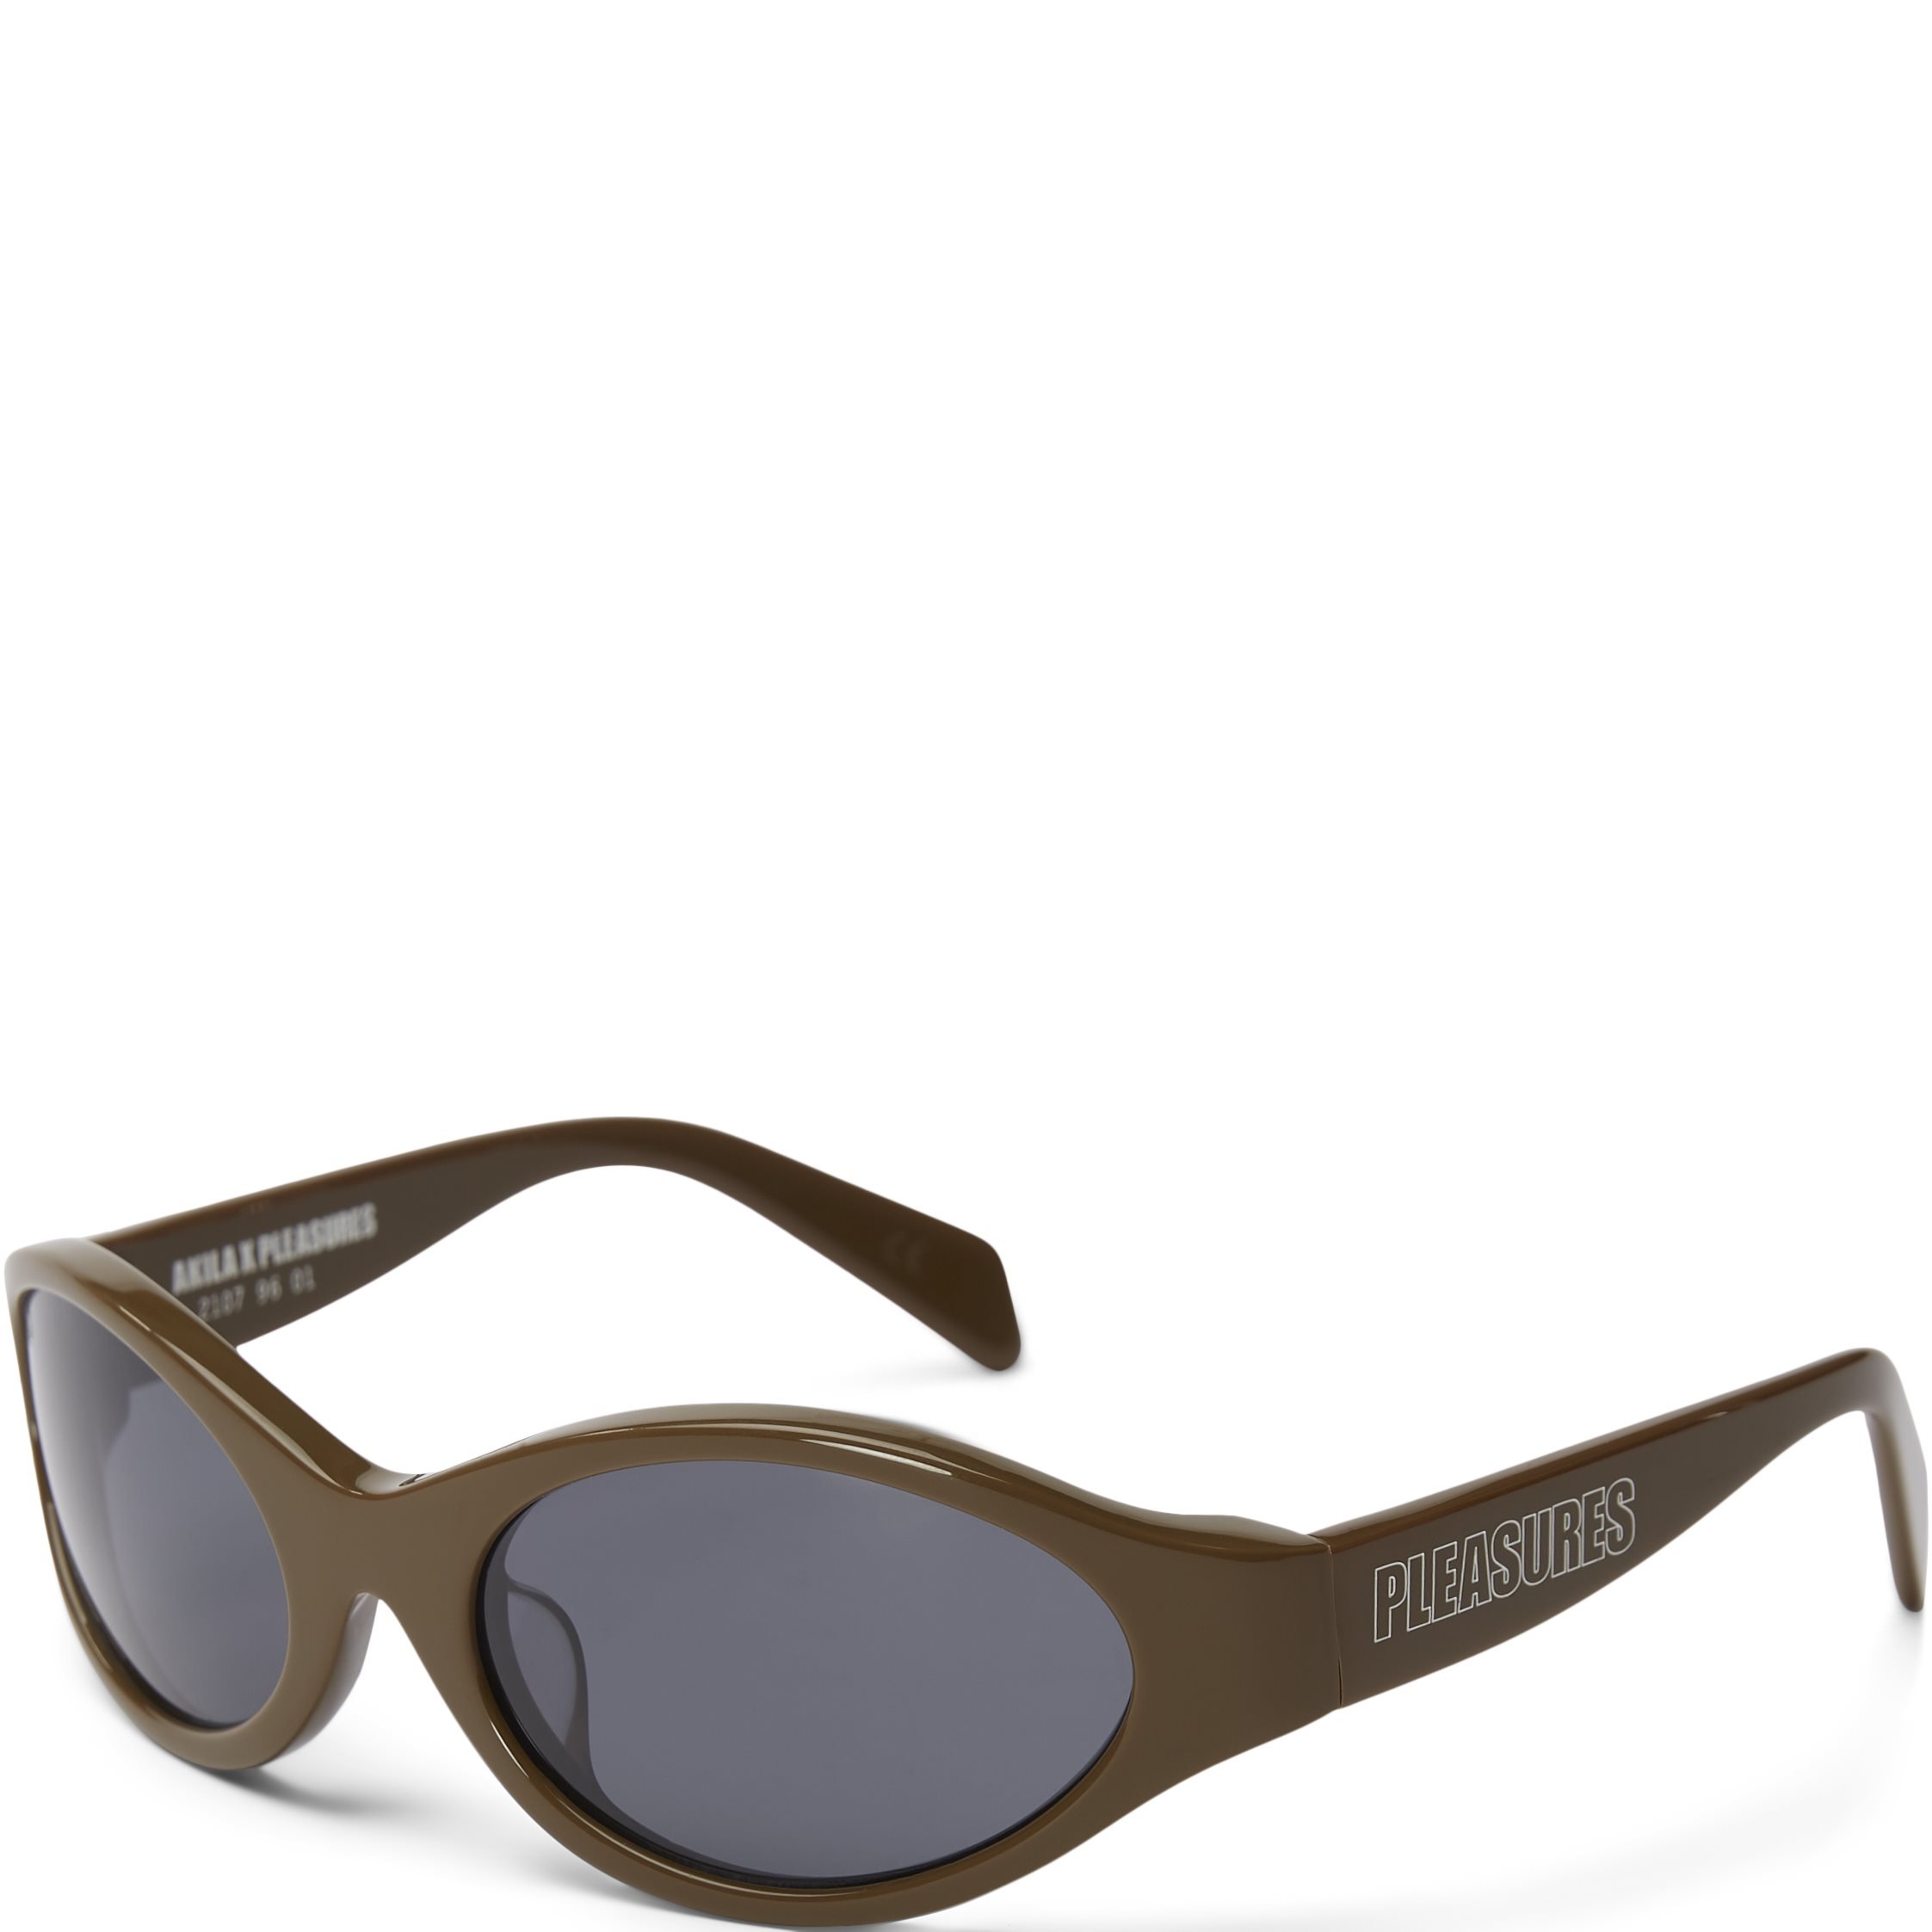 Reflex Sunglasses - Accessories - Brun